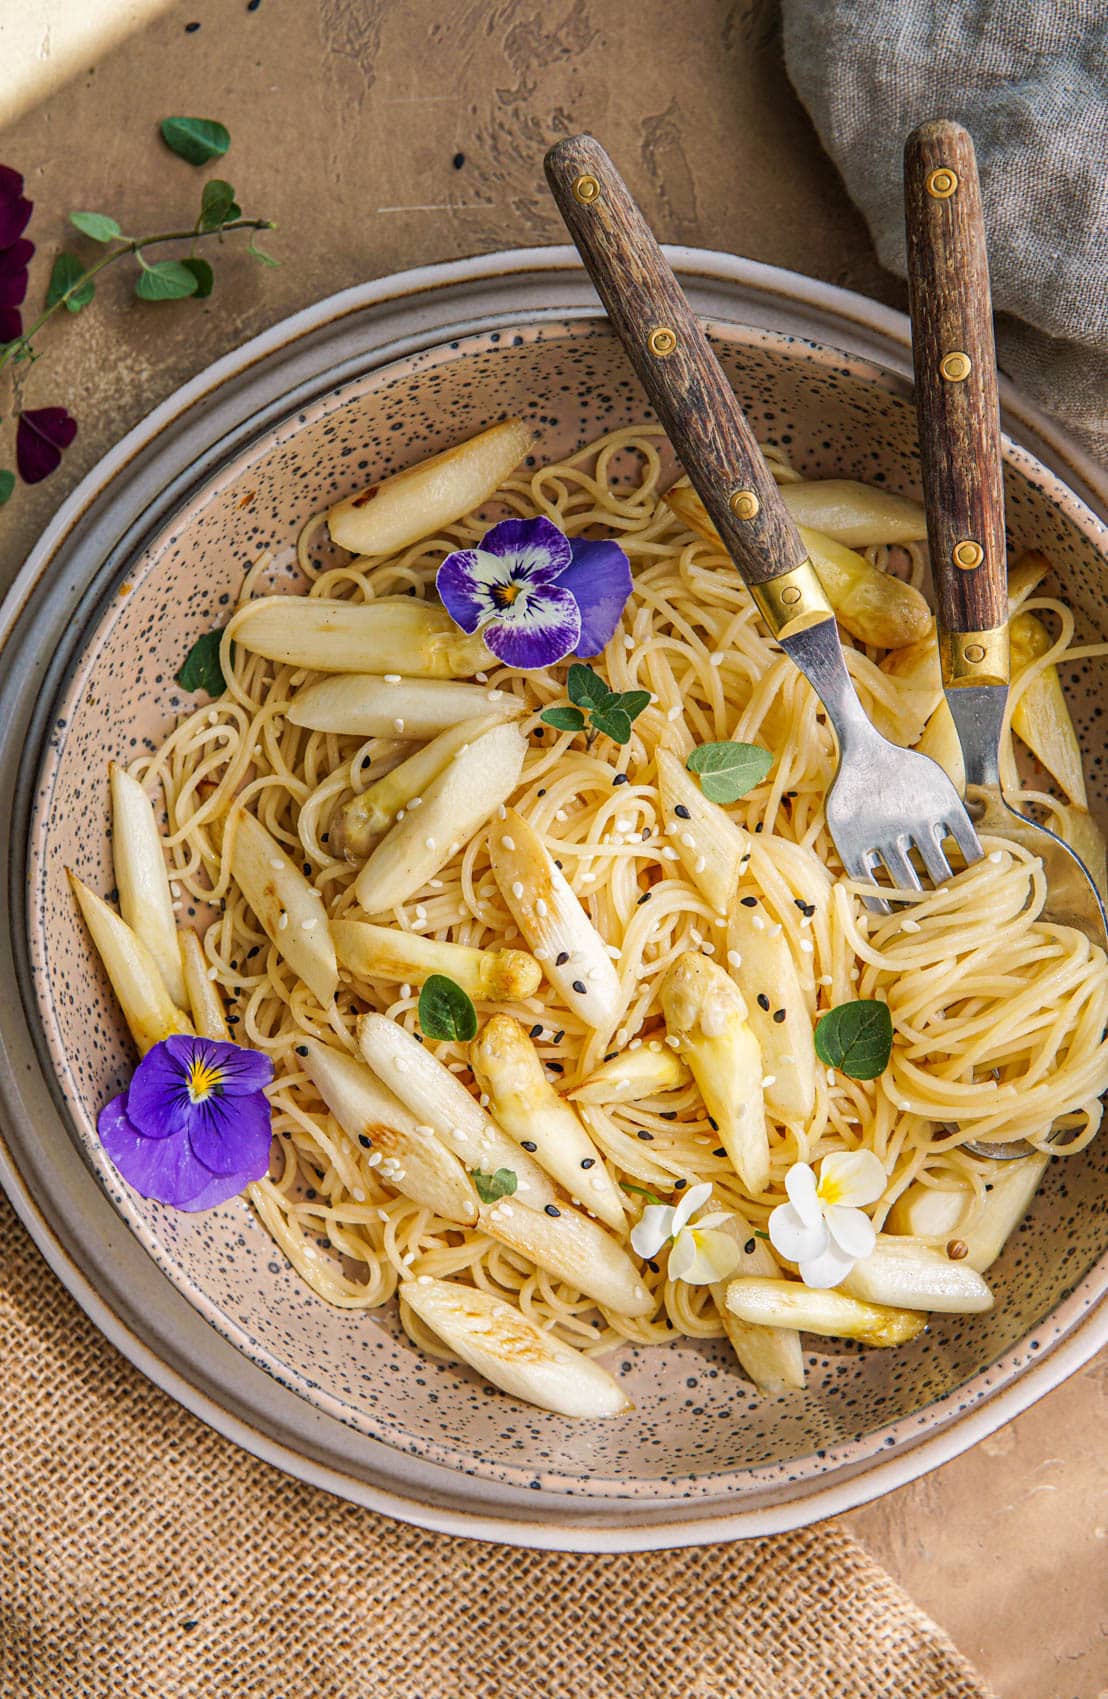 Recept voor vegan pasta met witte asperge